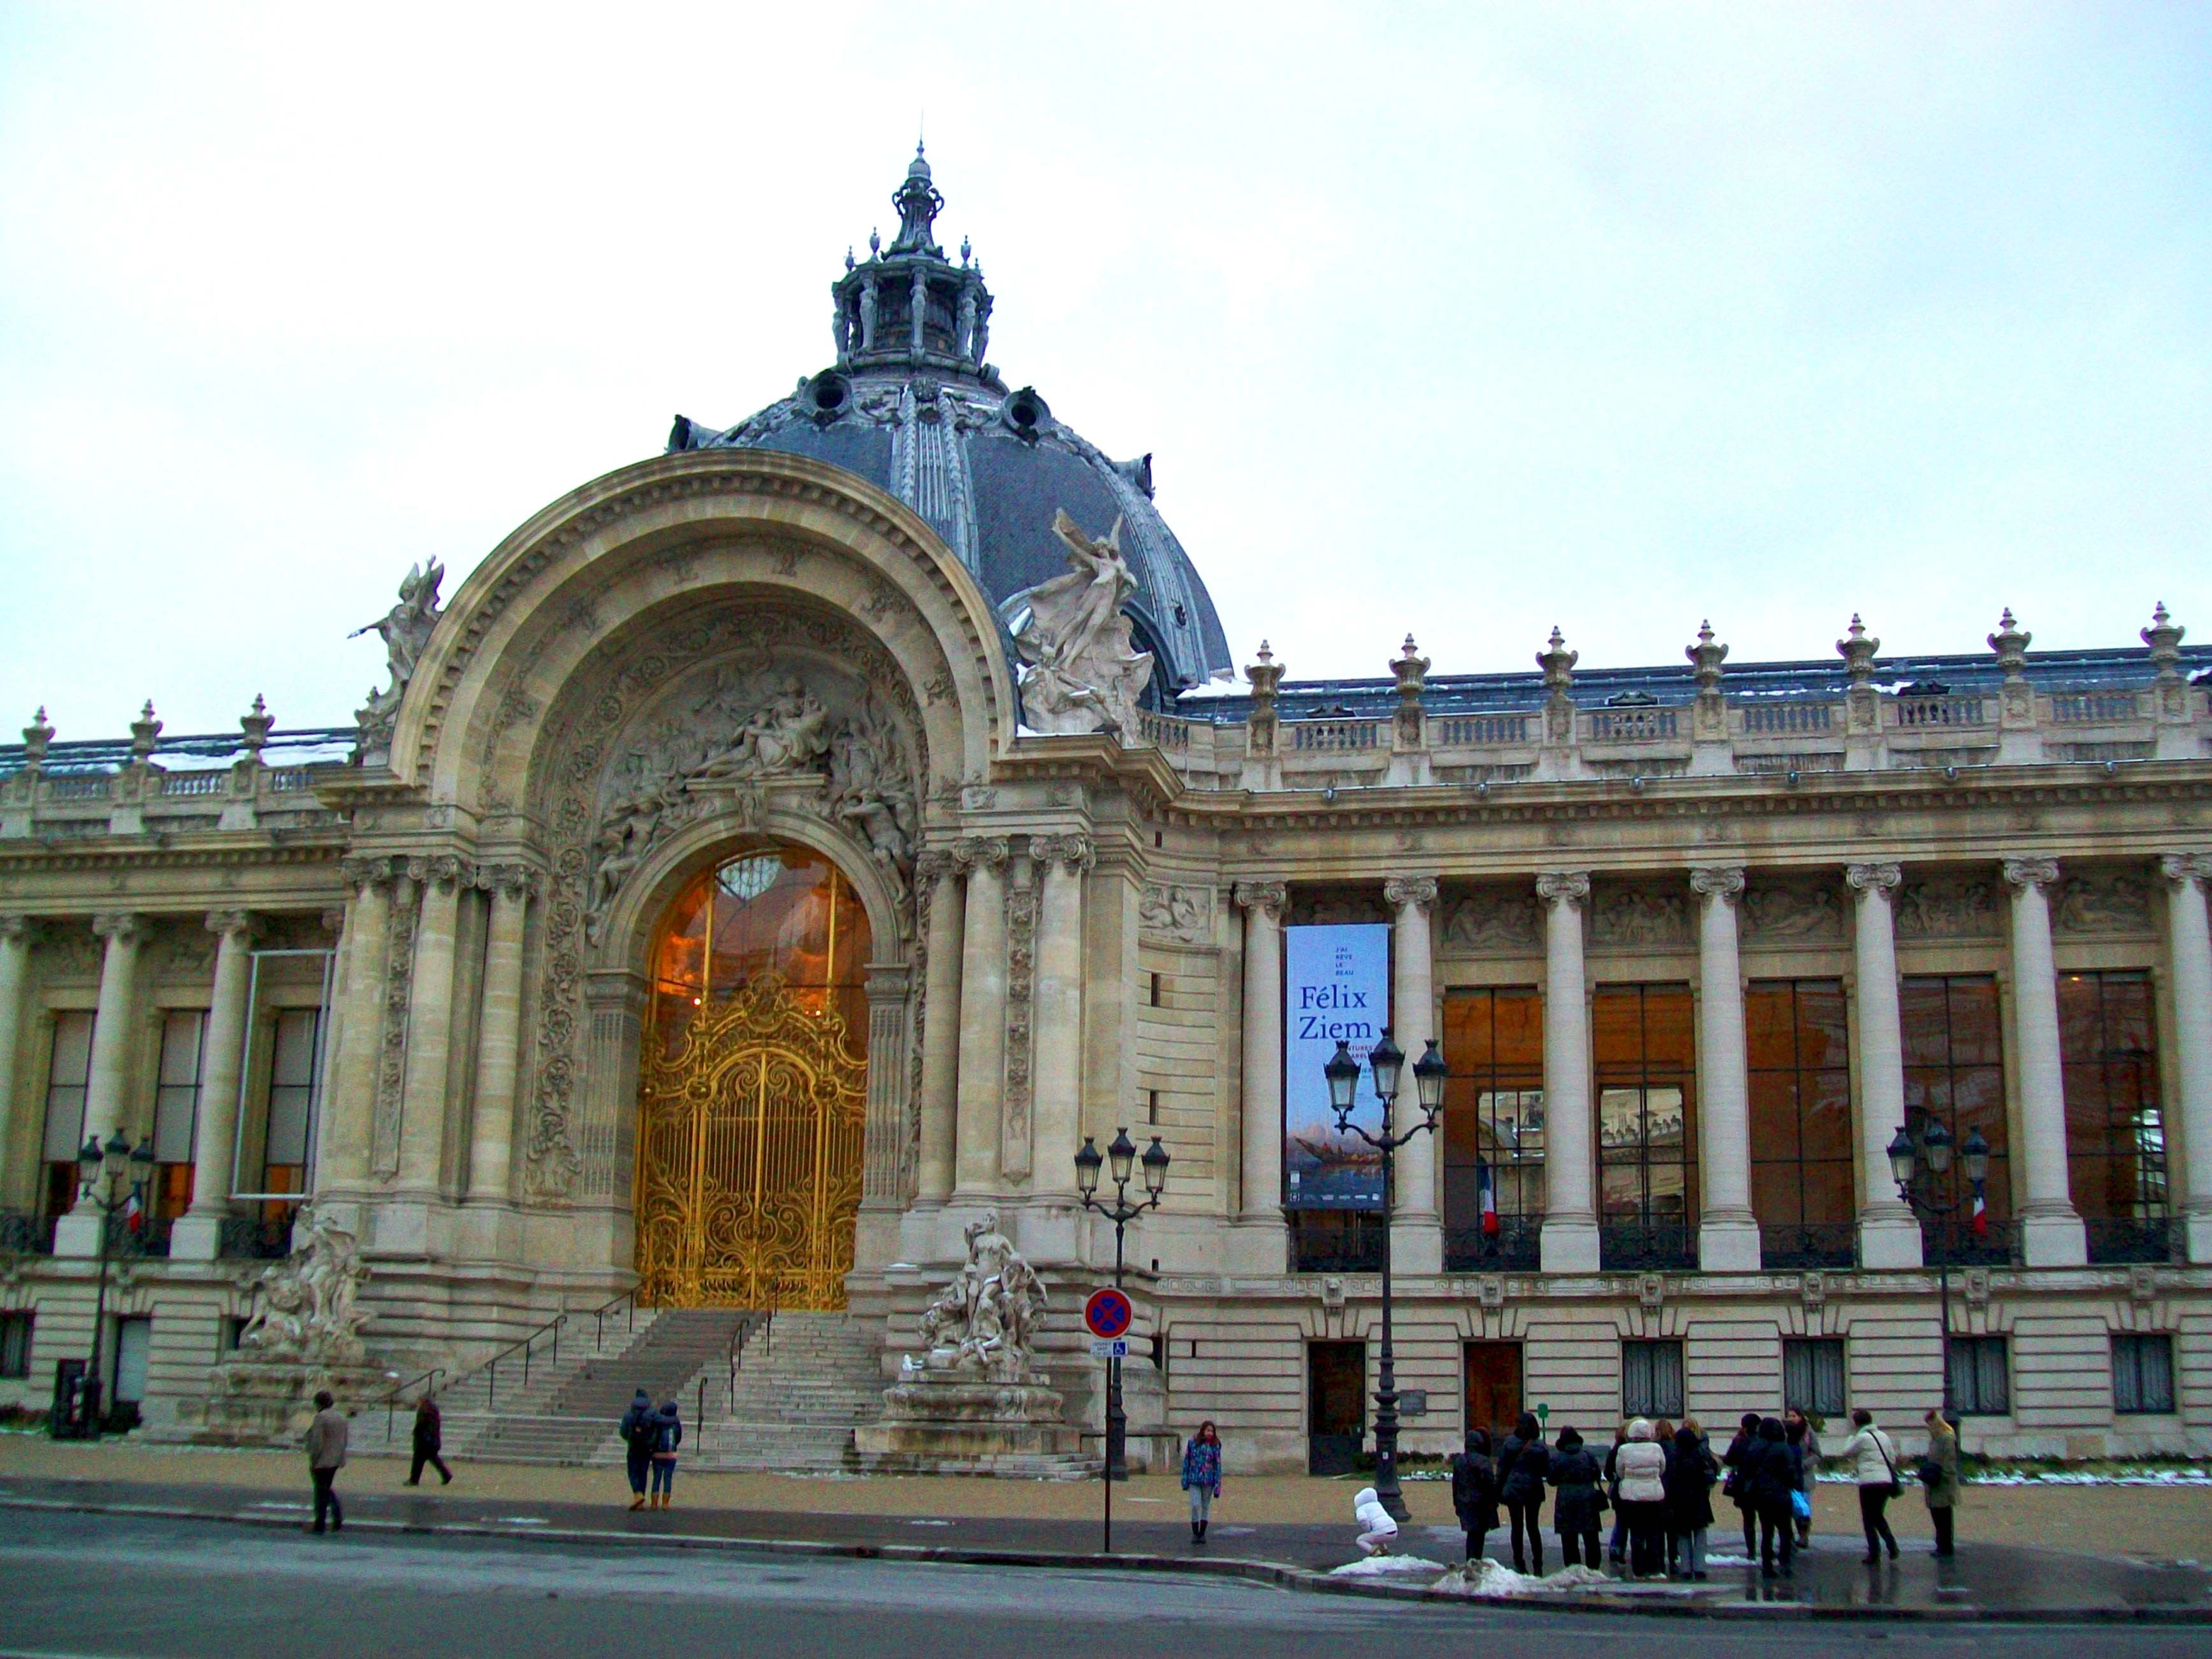 Petit Palais, Musée des Beaux-Arts de la ville de Paris